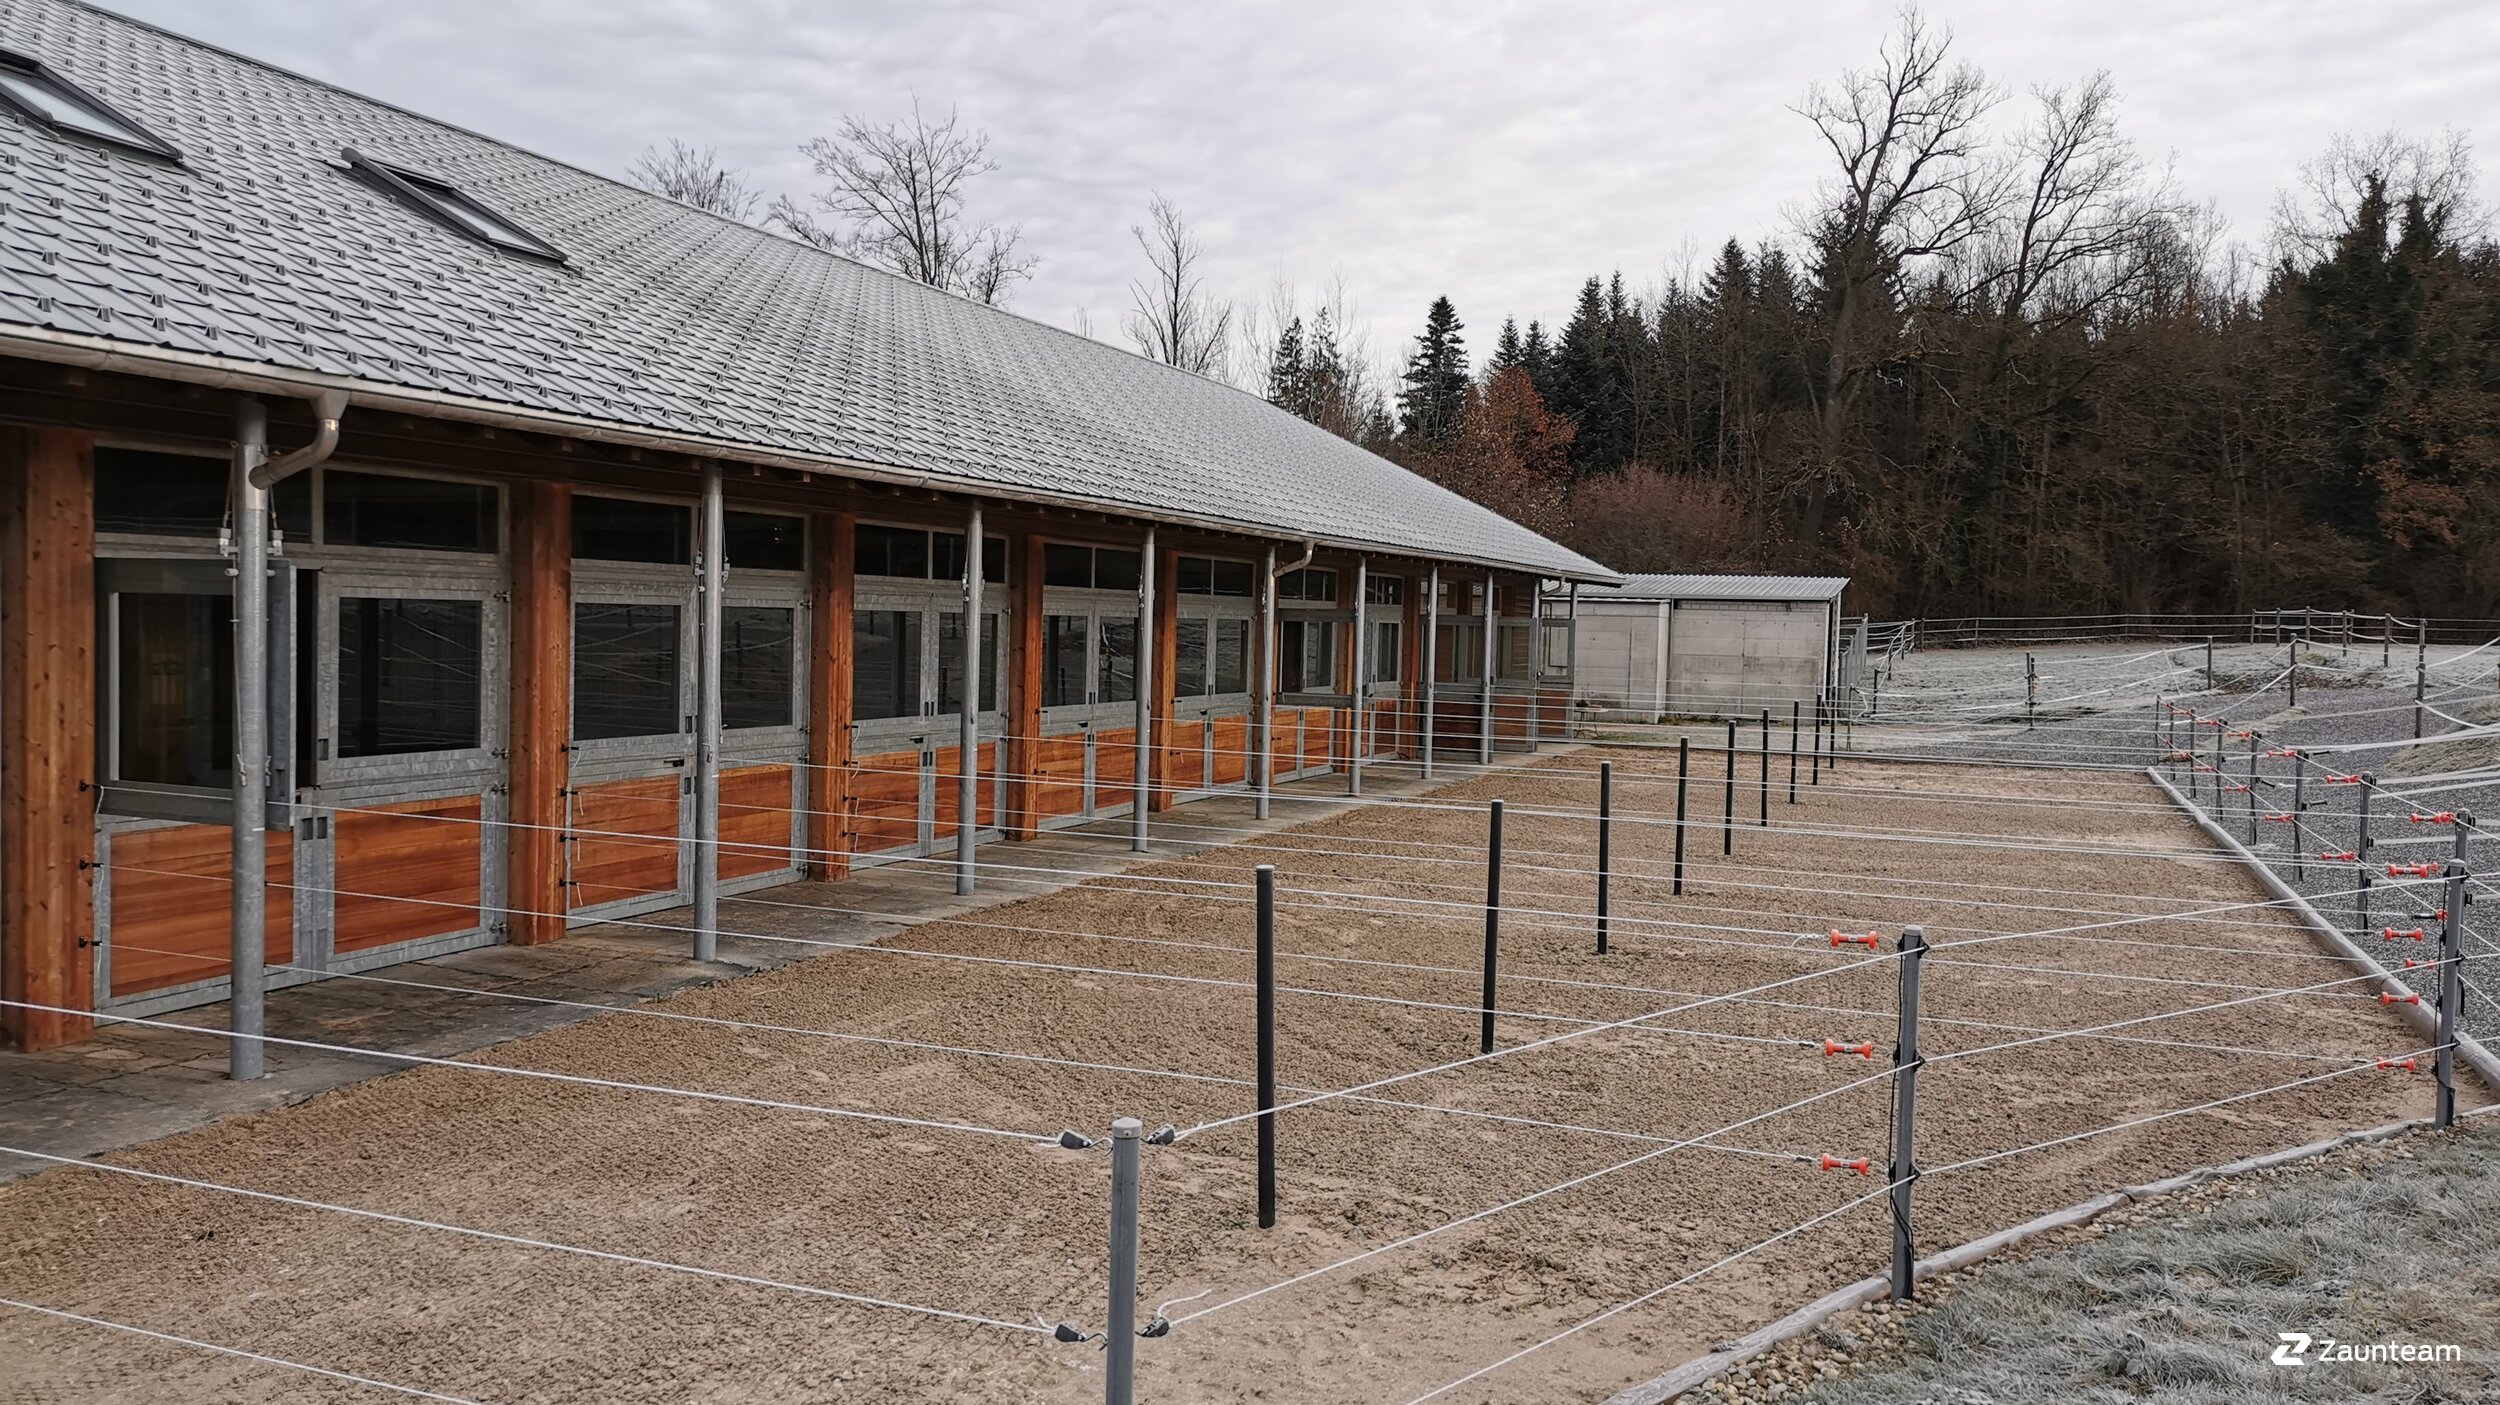 Clôture électrique pour chevaux de 2019 à 9240 Uzwil Suisse de Zaunteam Appenzellerland.